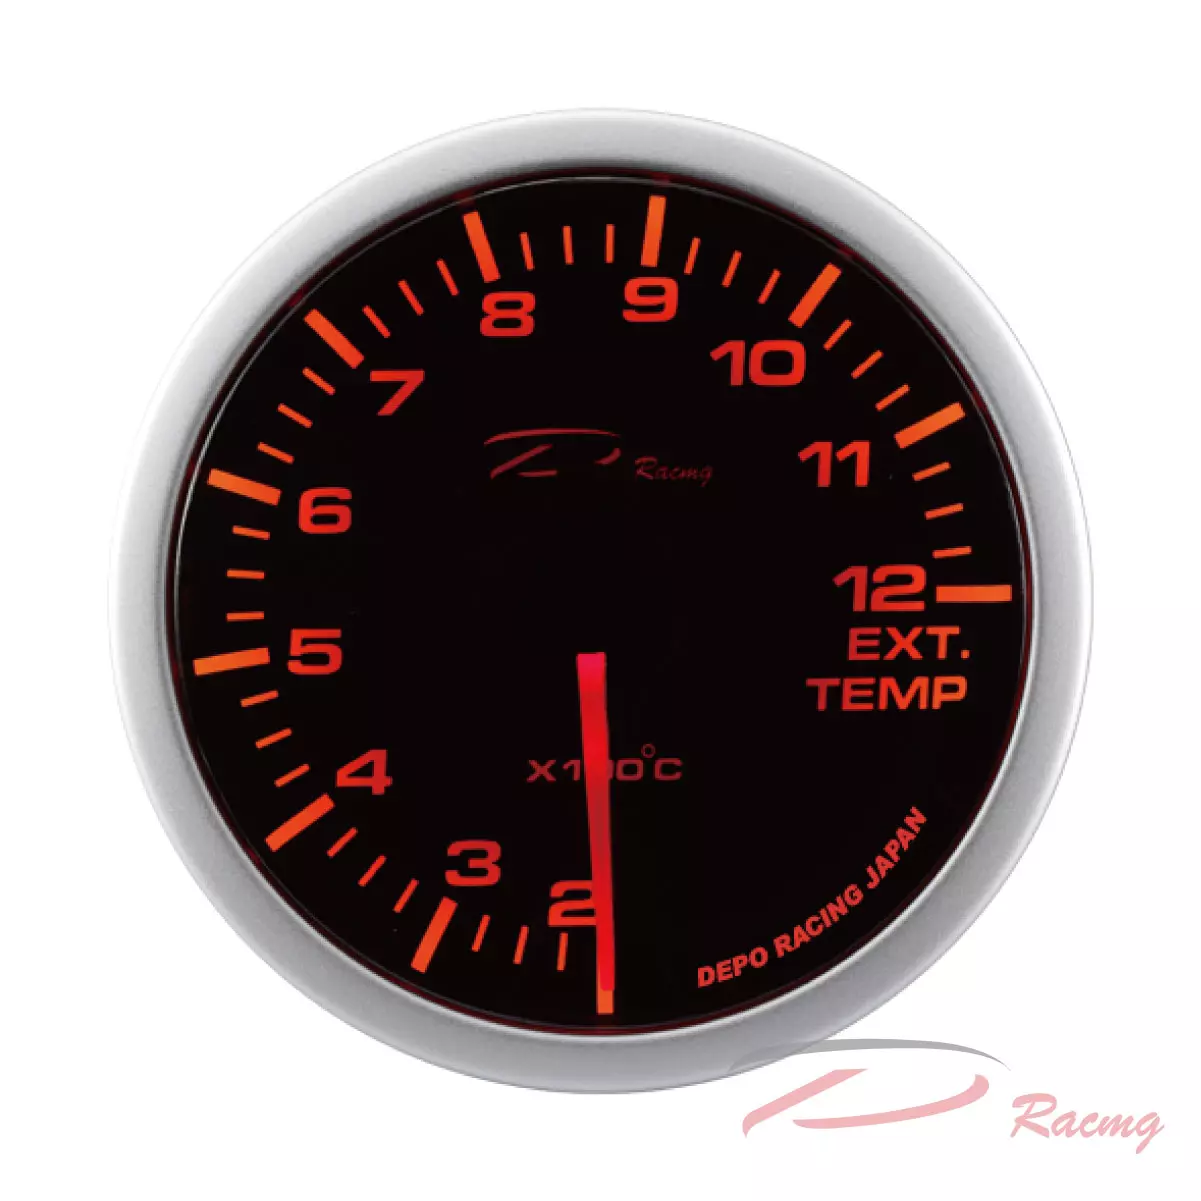 Dracing, Depo racing, car gauges, auto gauge, digital gauges, gauge set, aftermarket gauges, digital car gauges, racing gauges, truck gauges, dash gauges